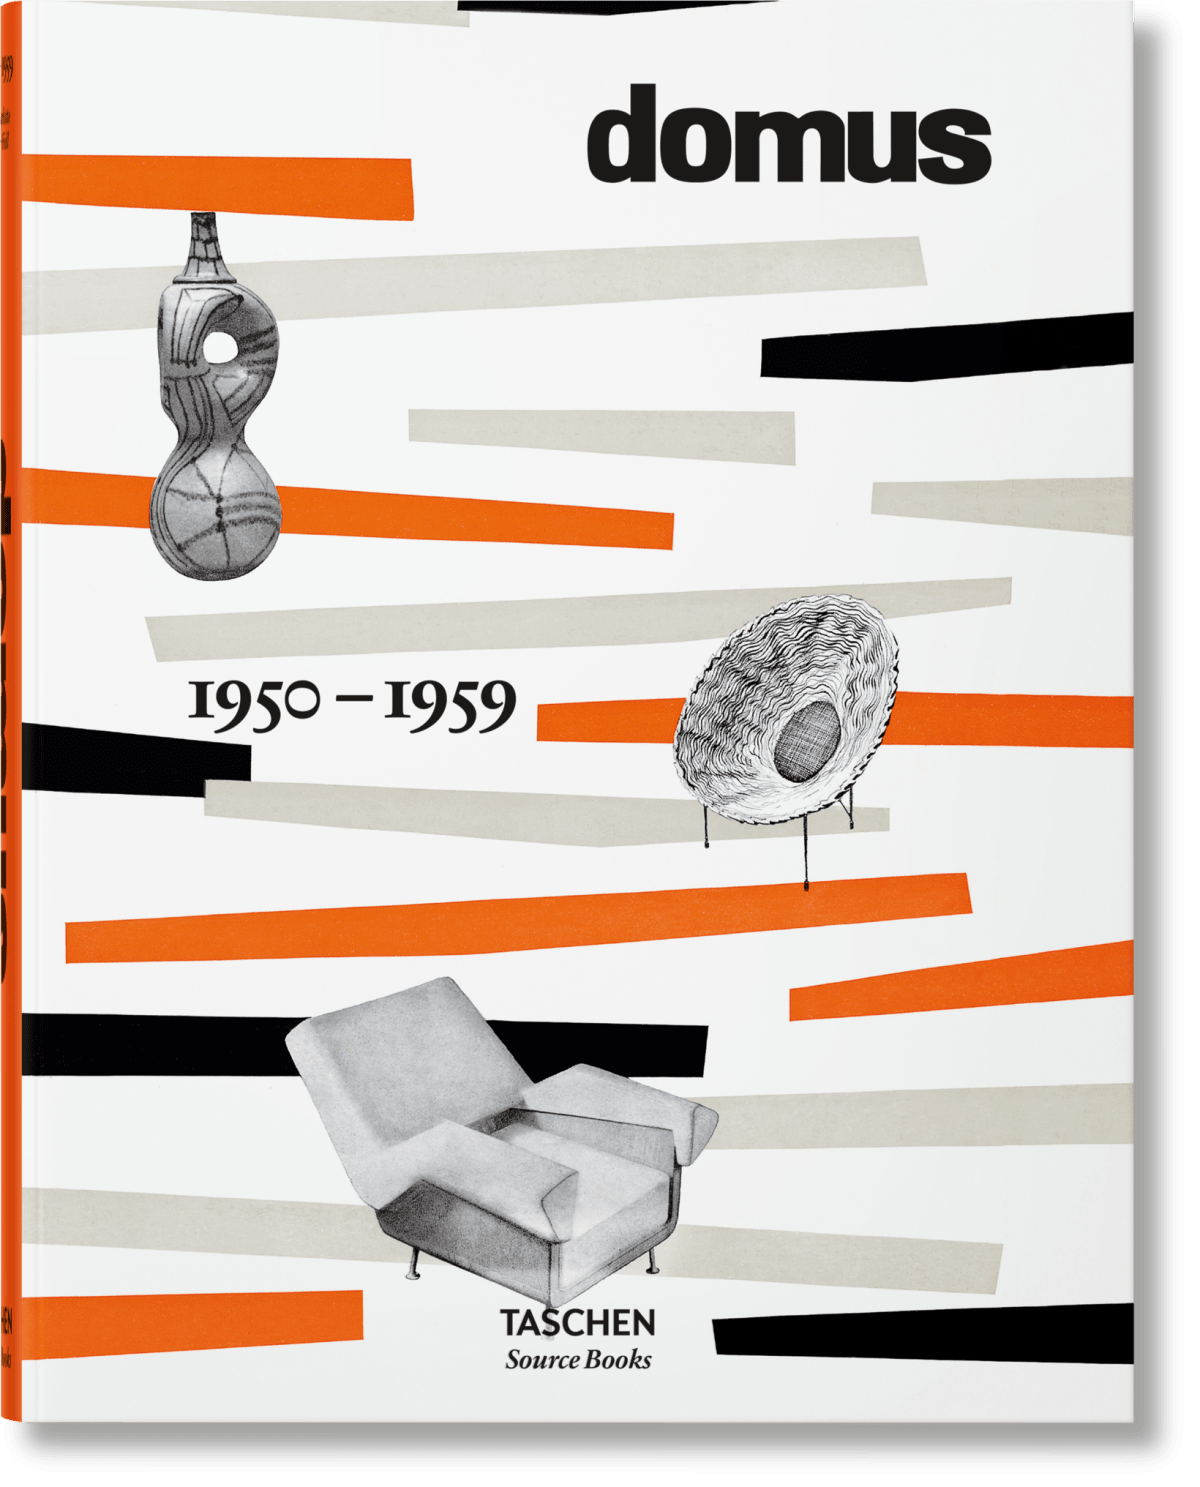 Εκδόσεις Taschen - domus 1950-1959 - Charlotte & Peter Fiell